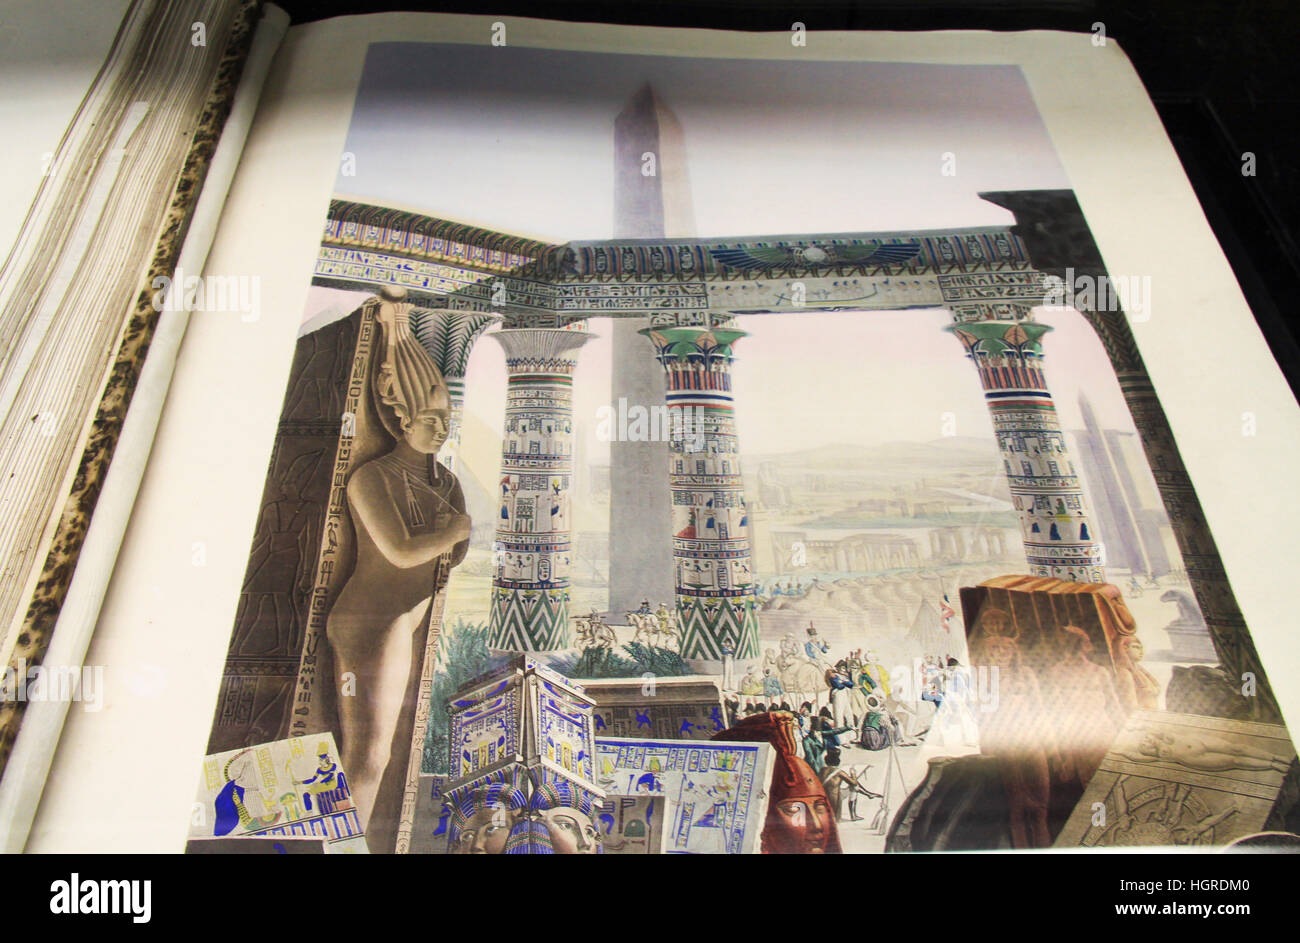 Abrir Enciclopedia del libro que muestra el arte artístico de la civilización egipcia antigua En la famosa Biblioteca de Alejandría en Alejandría Egipto Foto de stock